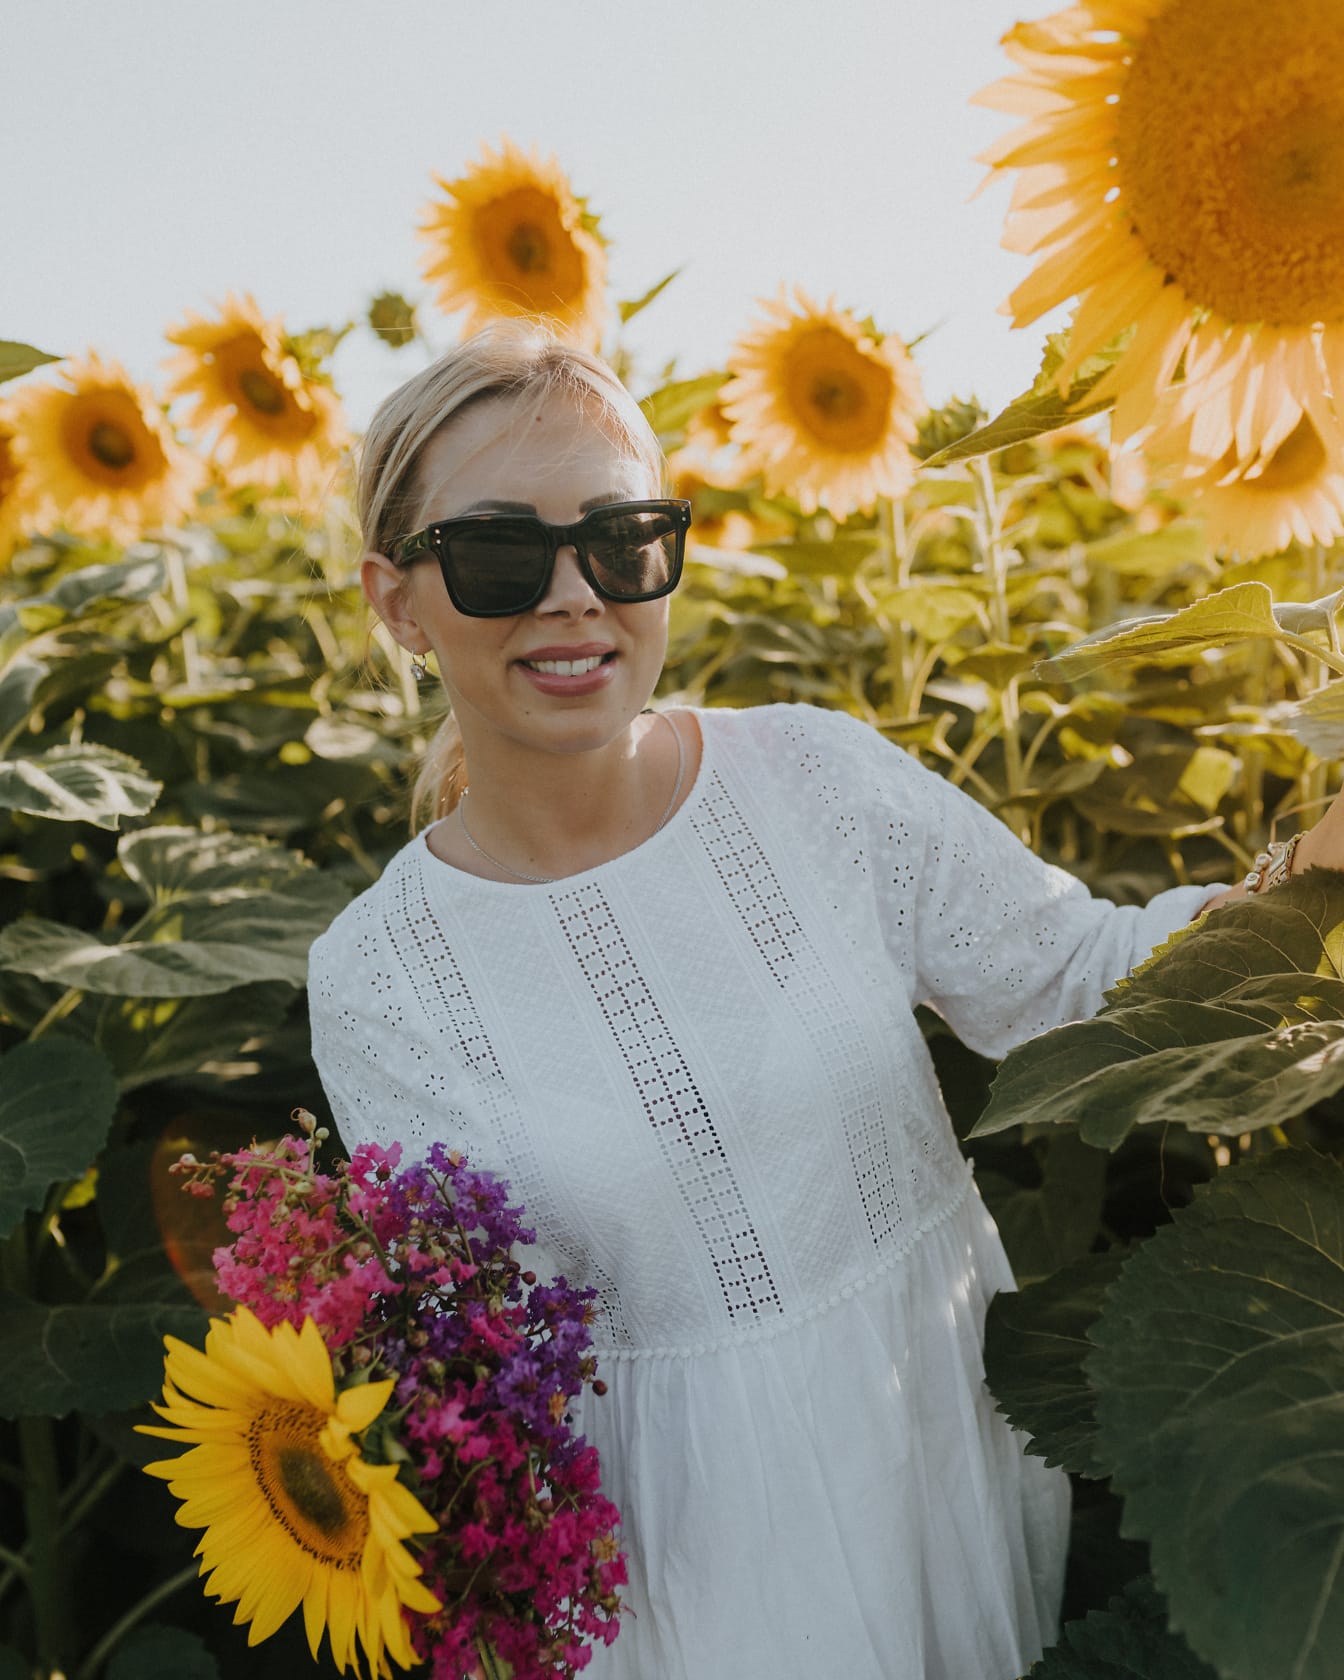 Ayçiçeği tarlasında poz verirken güneş gözlüğü takan gülümseyen sarışın kadın fotomodeli